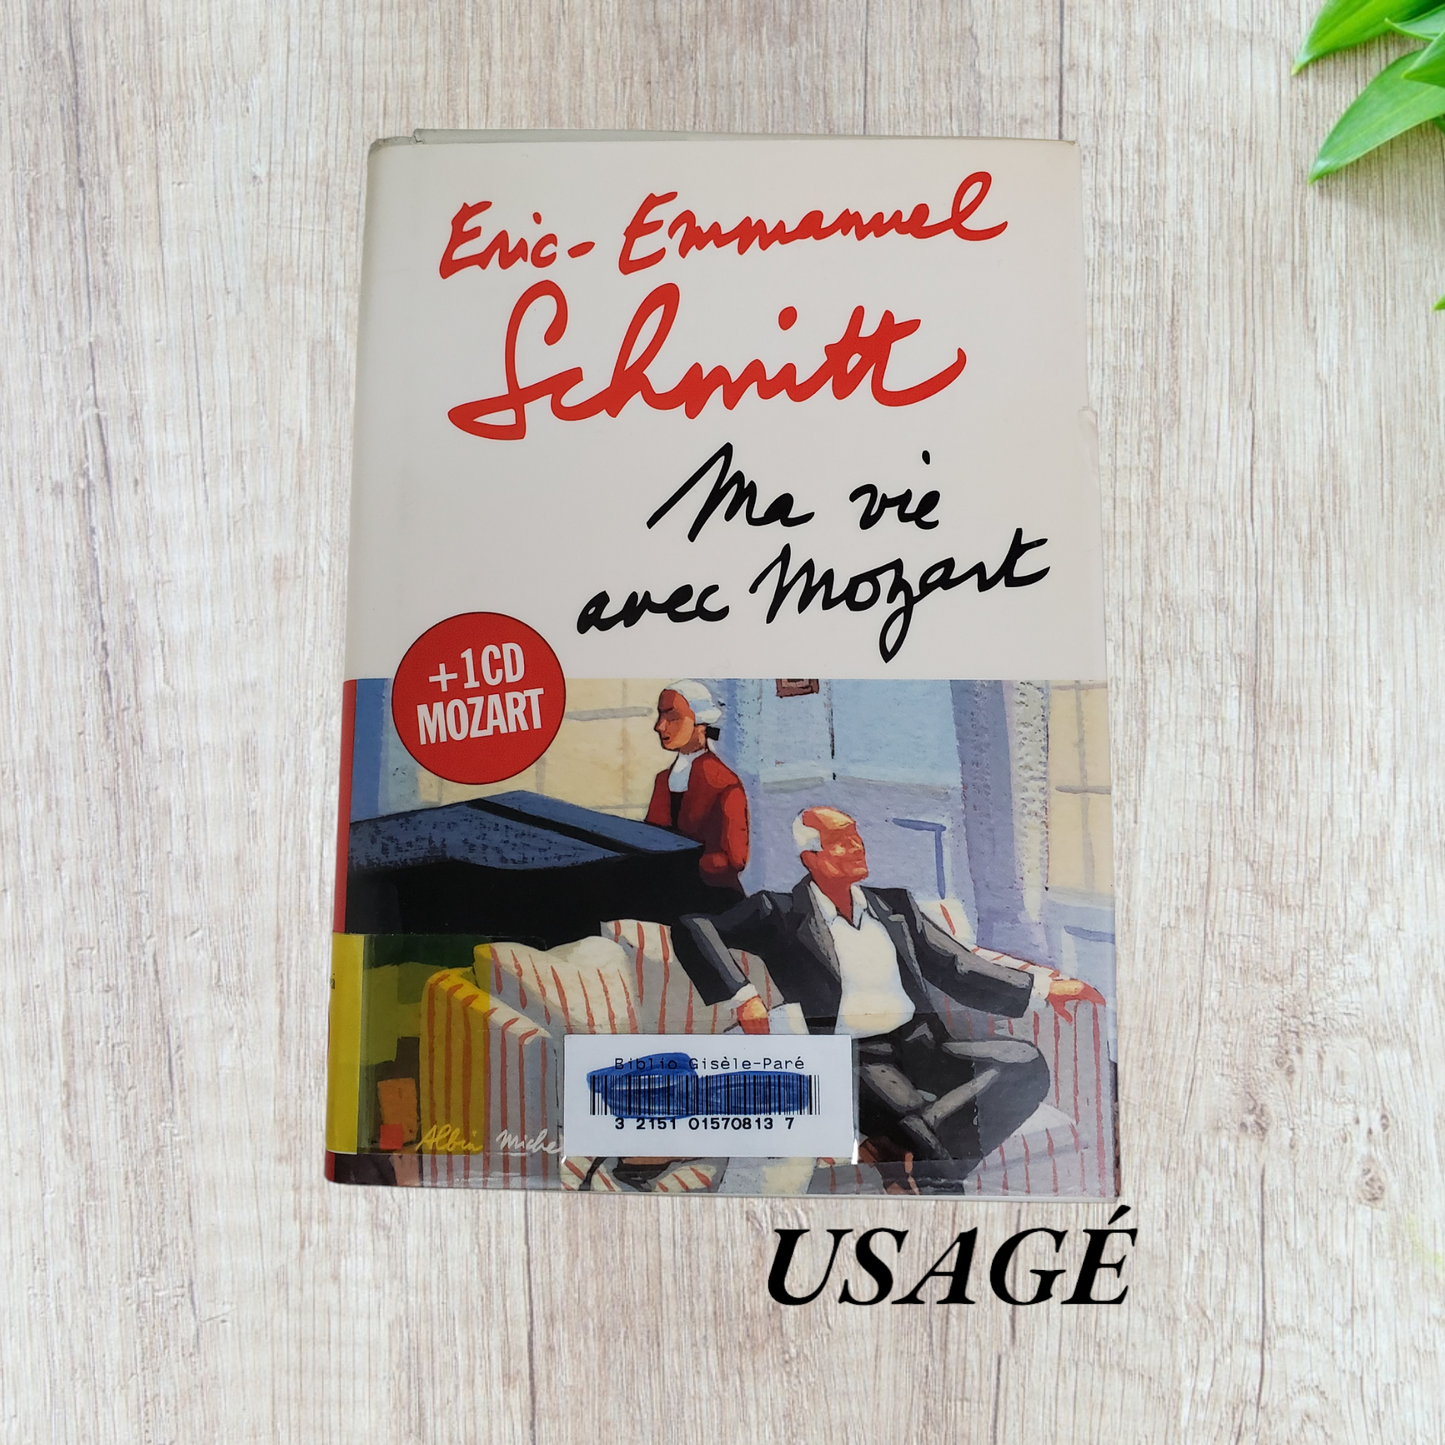 Ma vie avec Mozart de Eric-Emmanuel Schmitt (avec cd)